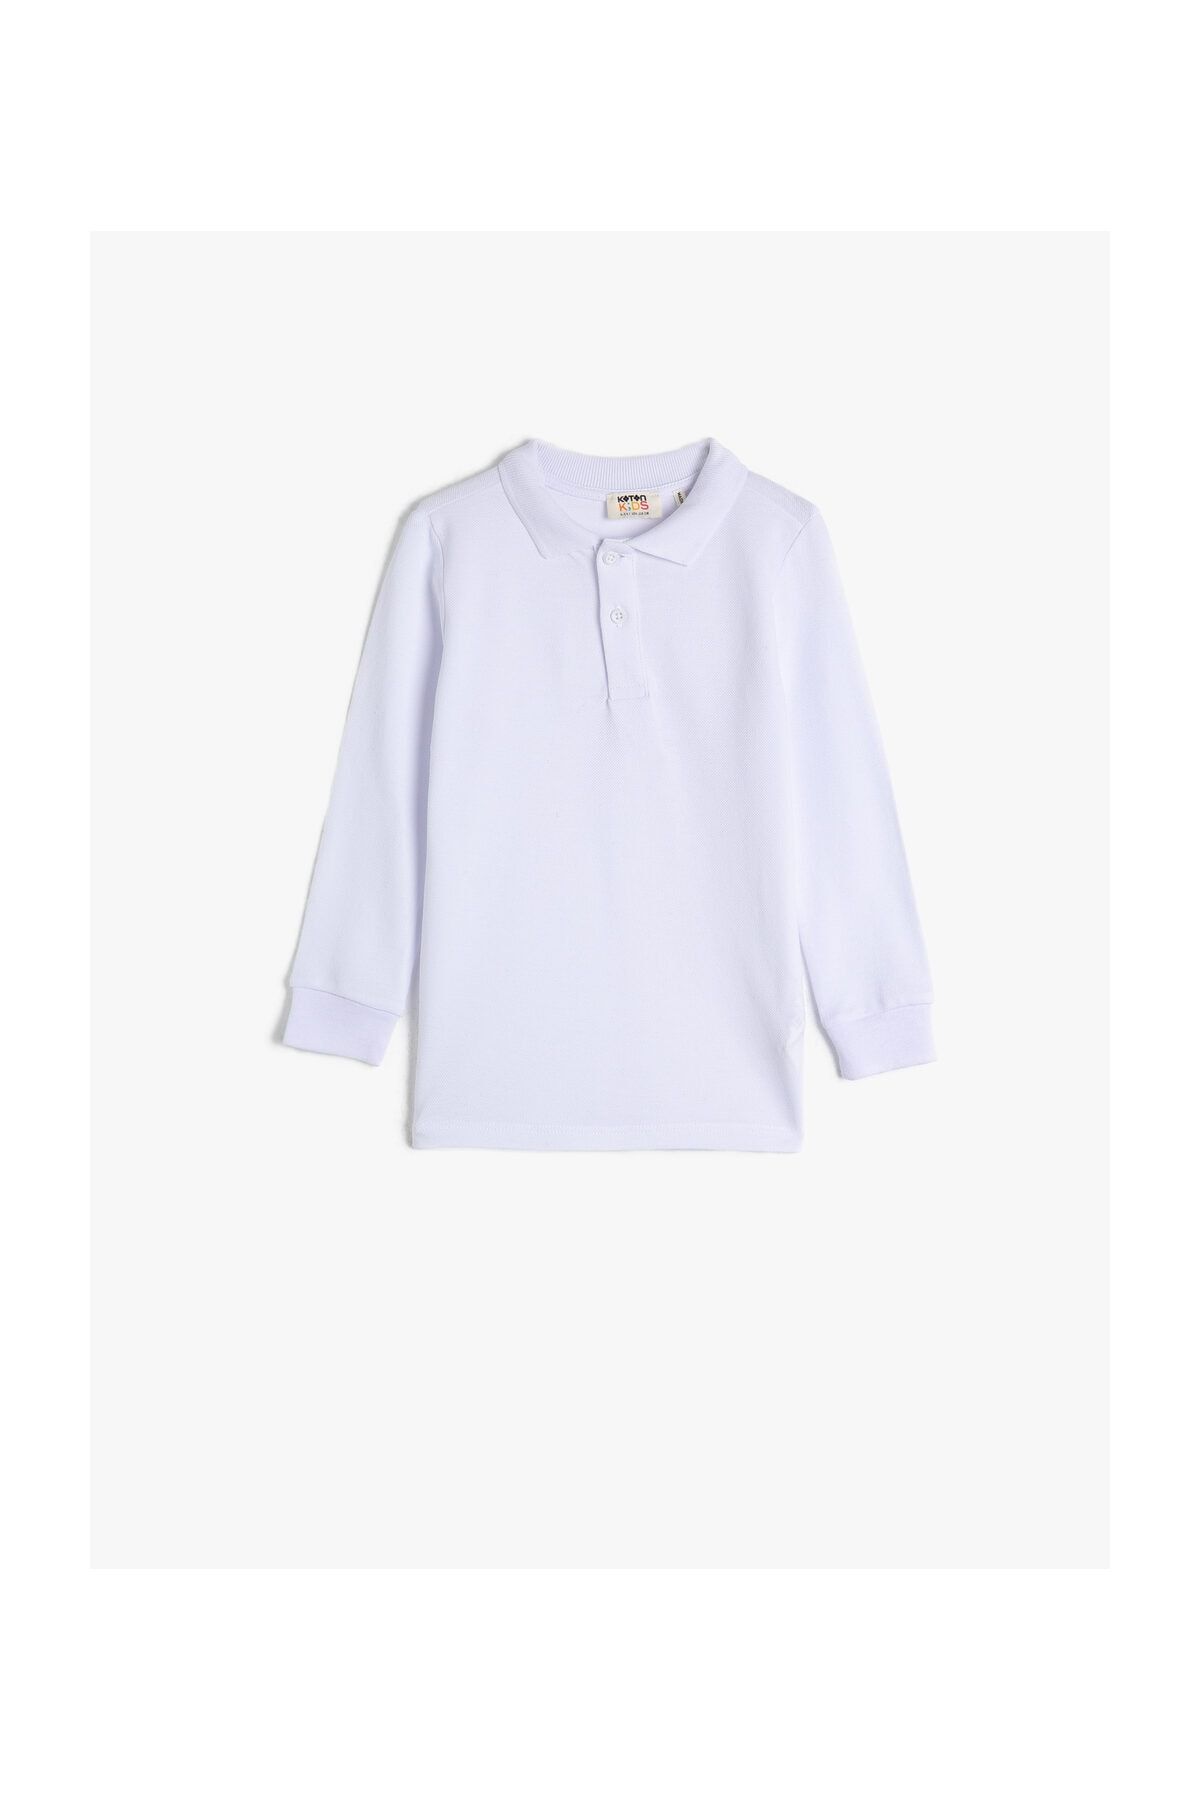 Koton Erkek Çocuk Beyaz Polo Yaka T-Shirt 1KKB18890OK